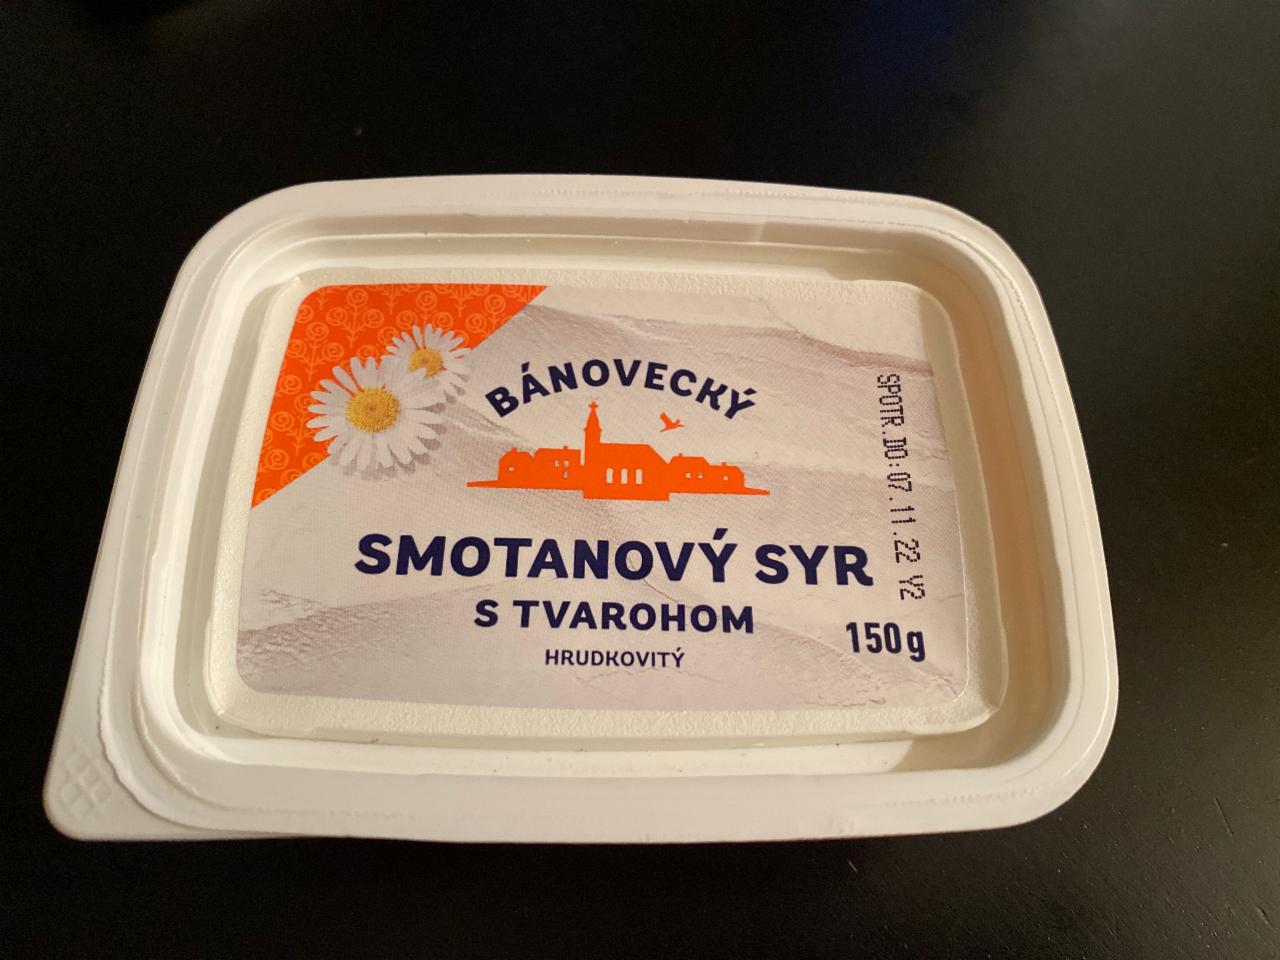 Fotografie - Bánovecký smotanový syr s tvarohom hrudkovitý